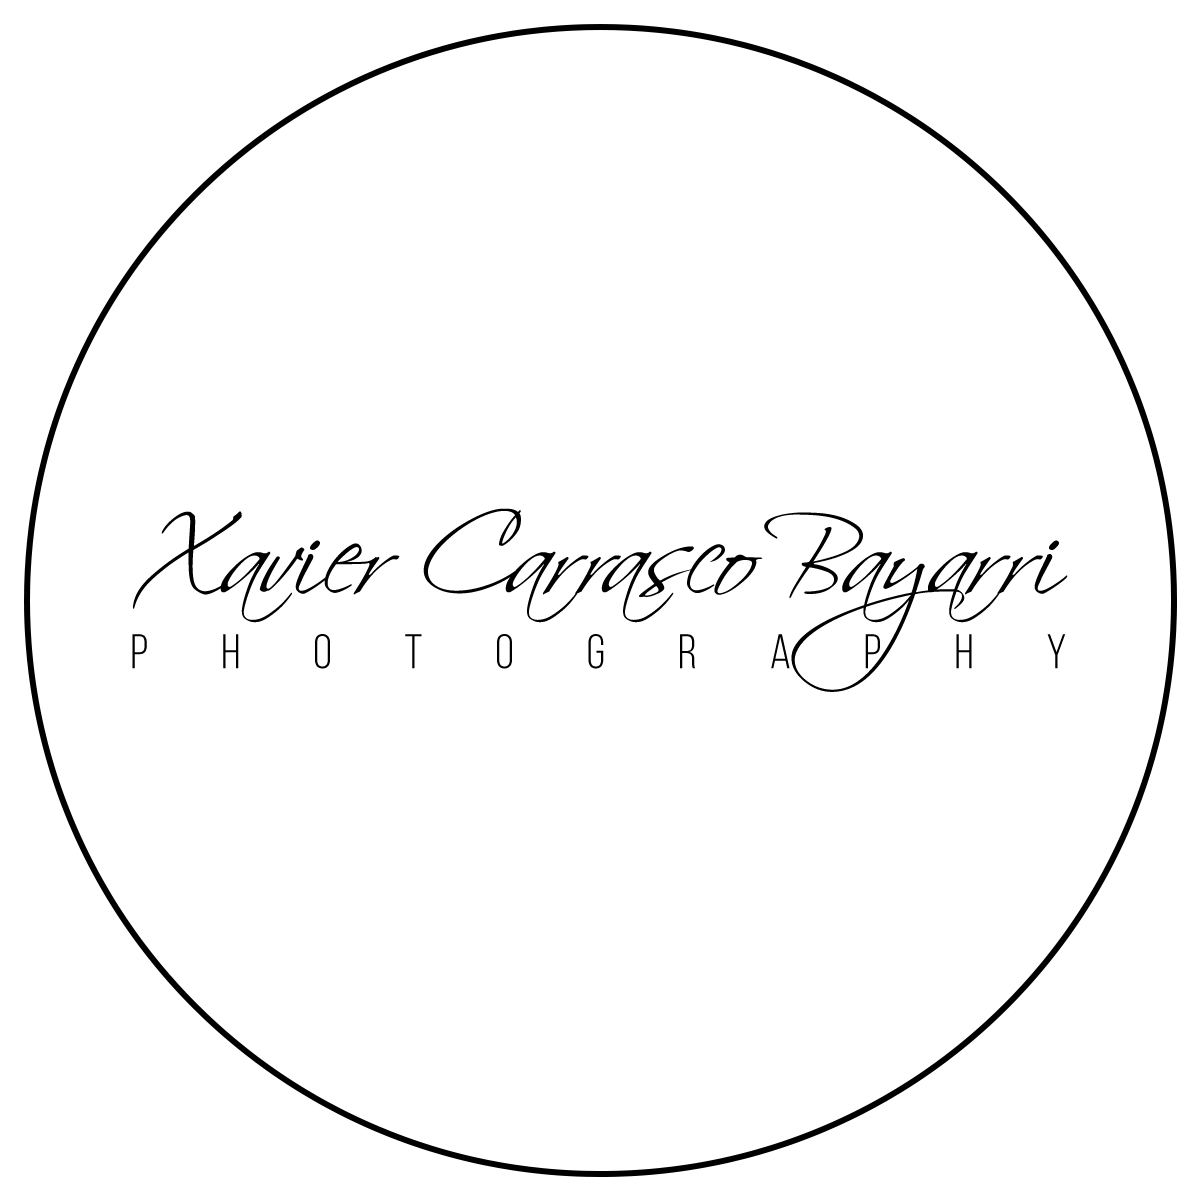 xavicarrasco logo